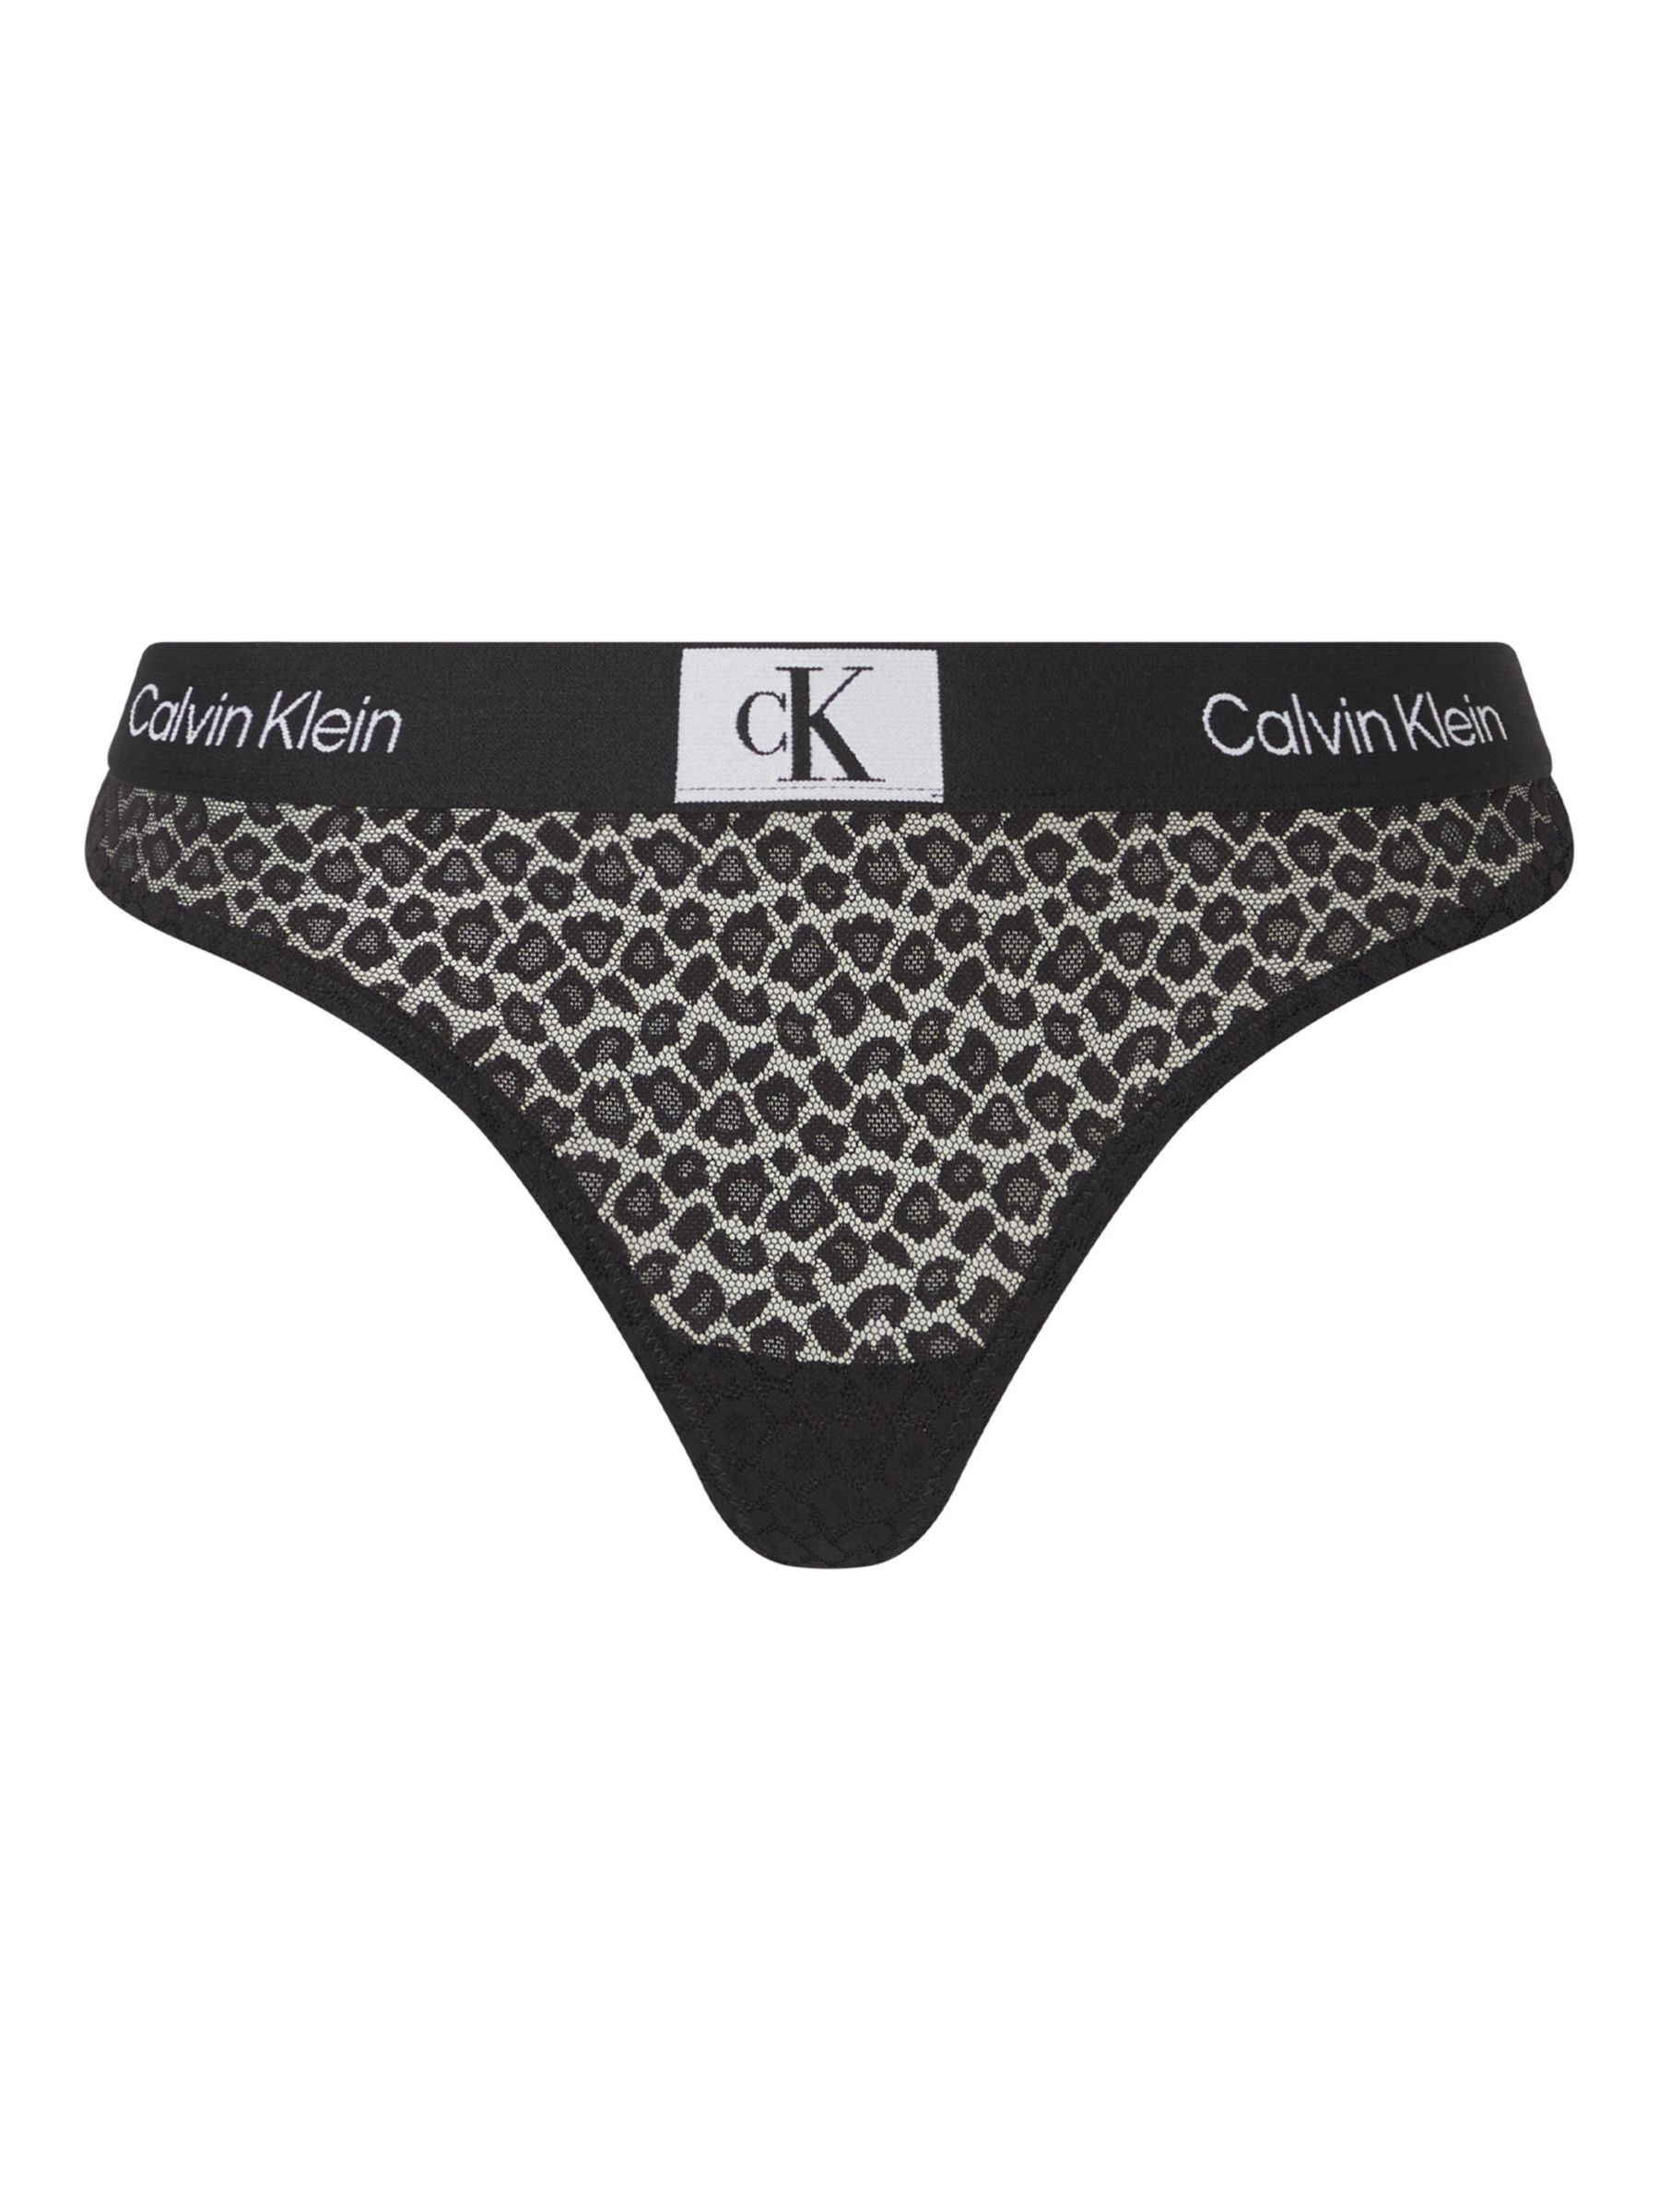 Calvin Klein 1996 Animal Lace High Waisted Bikini In Black